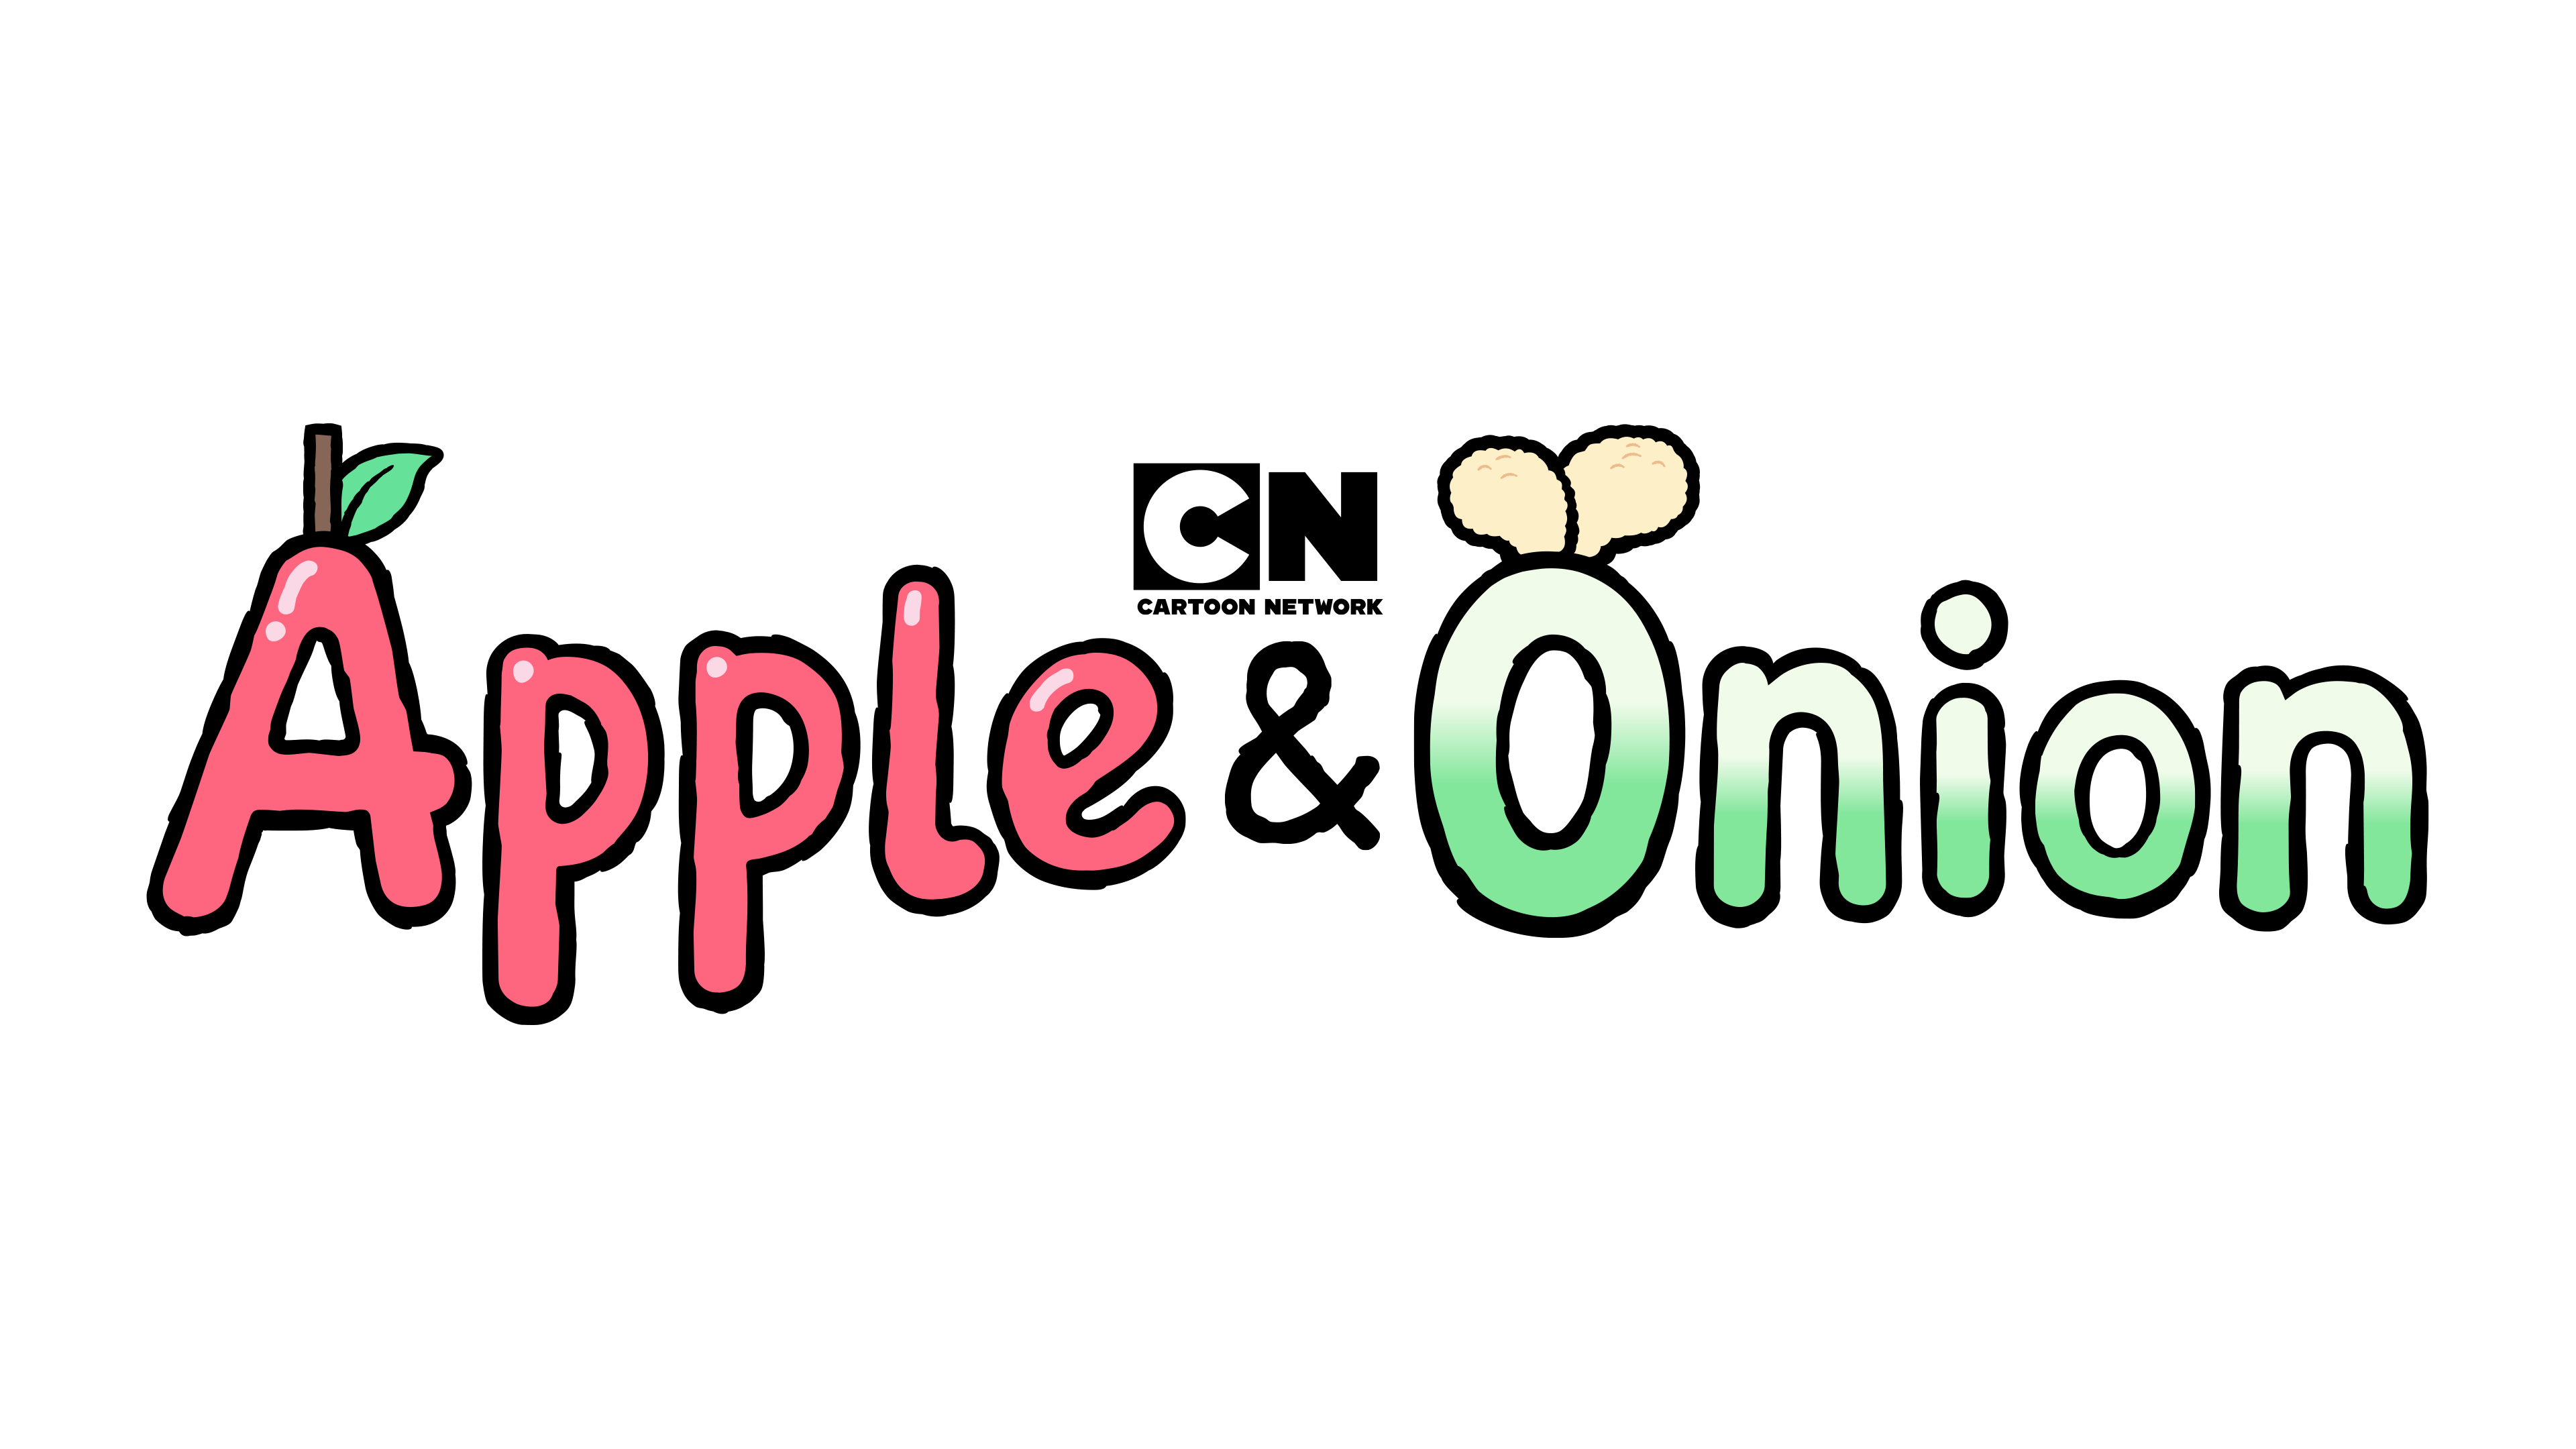 onion - Wikipedia